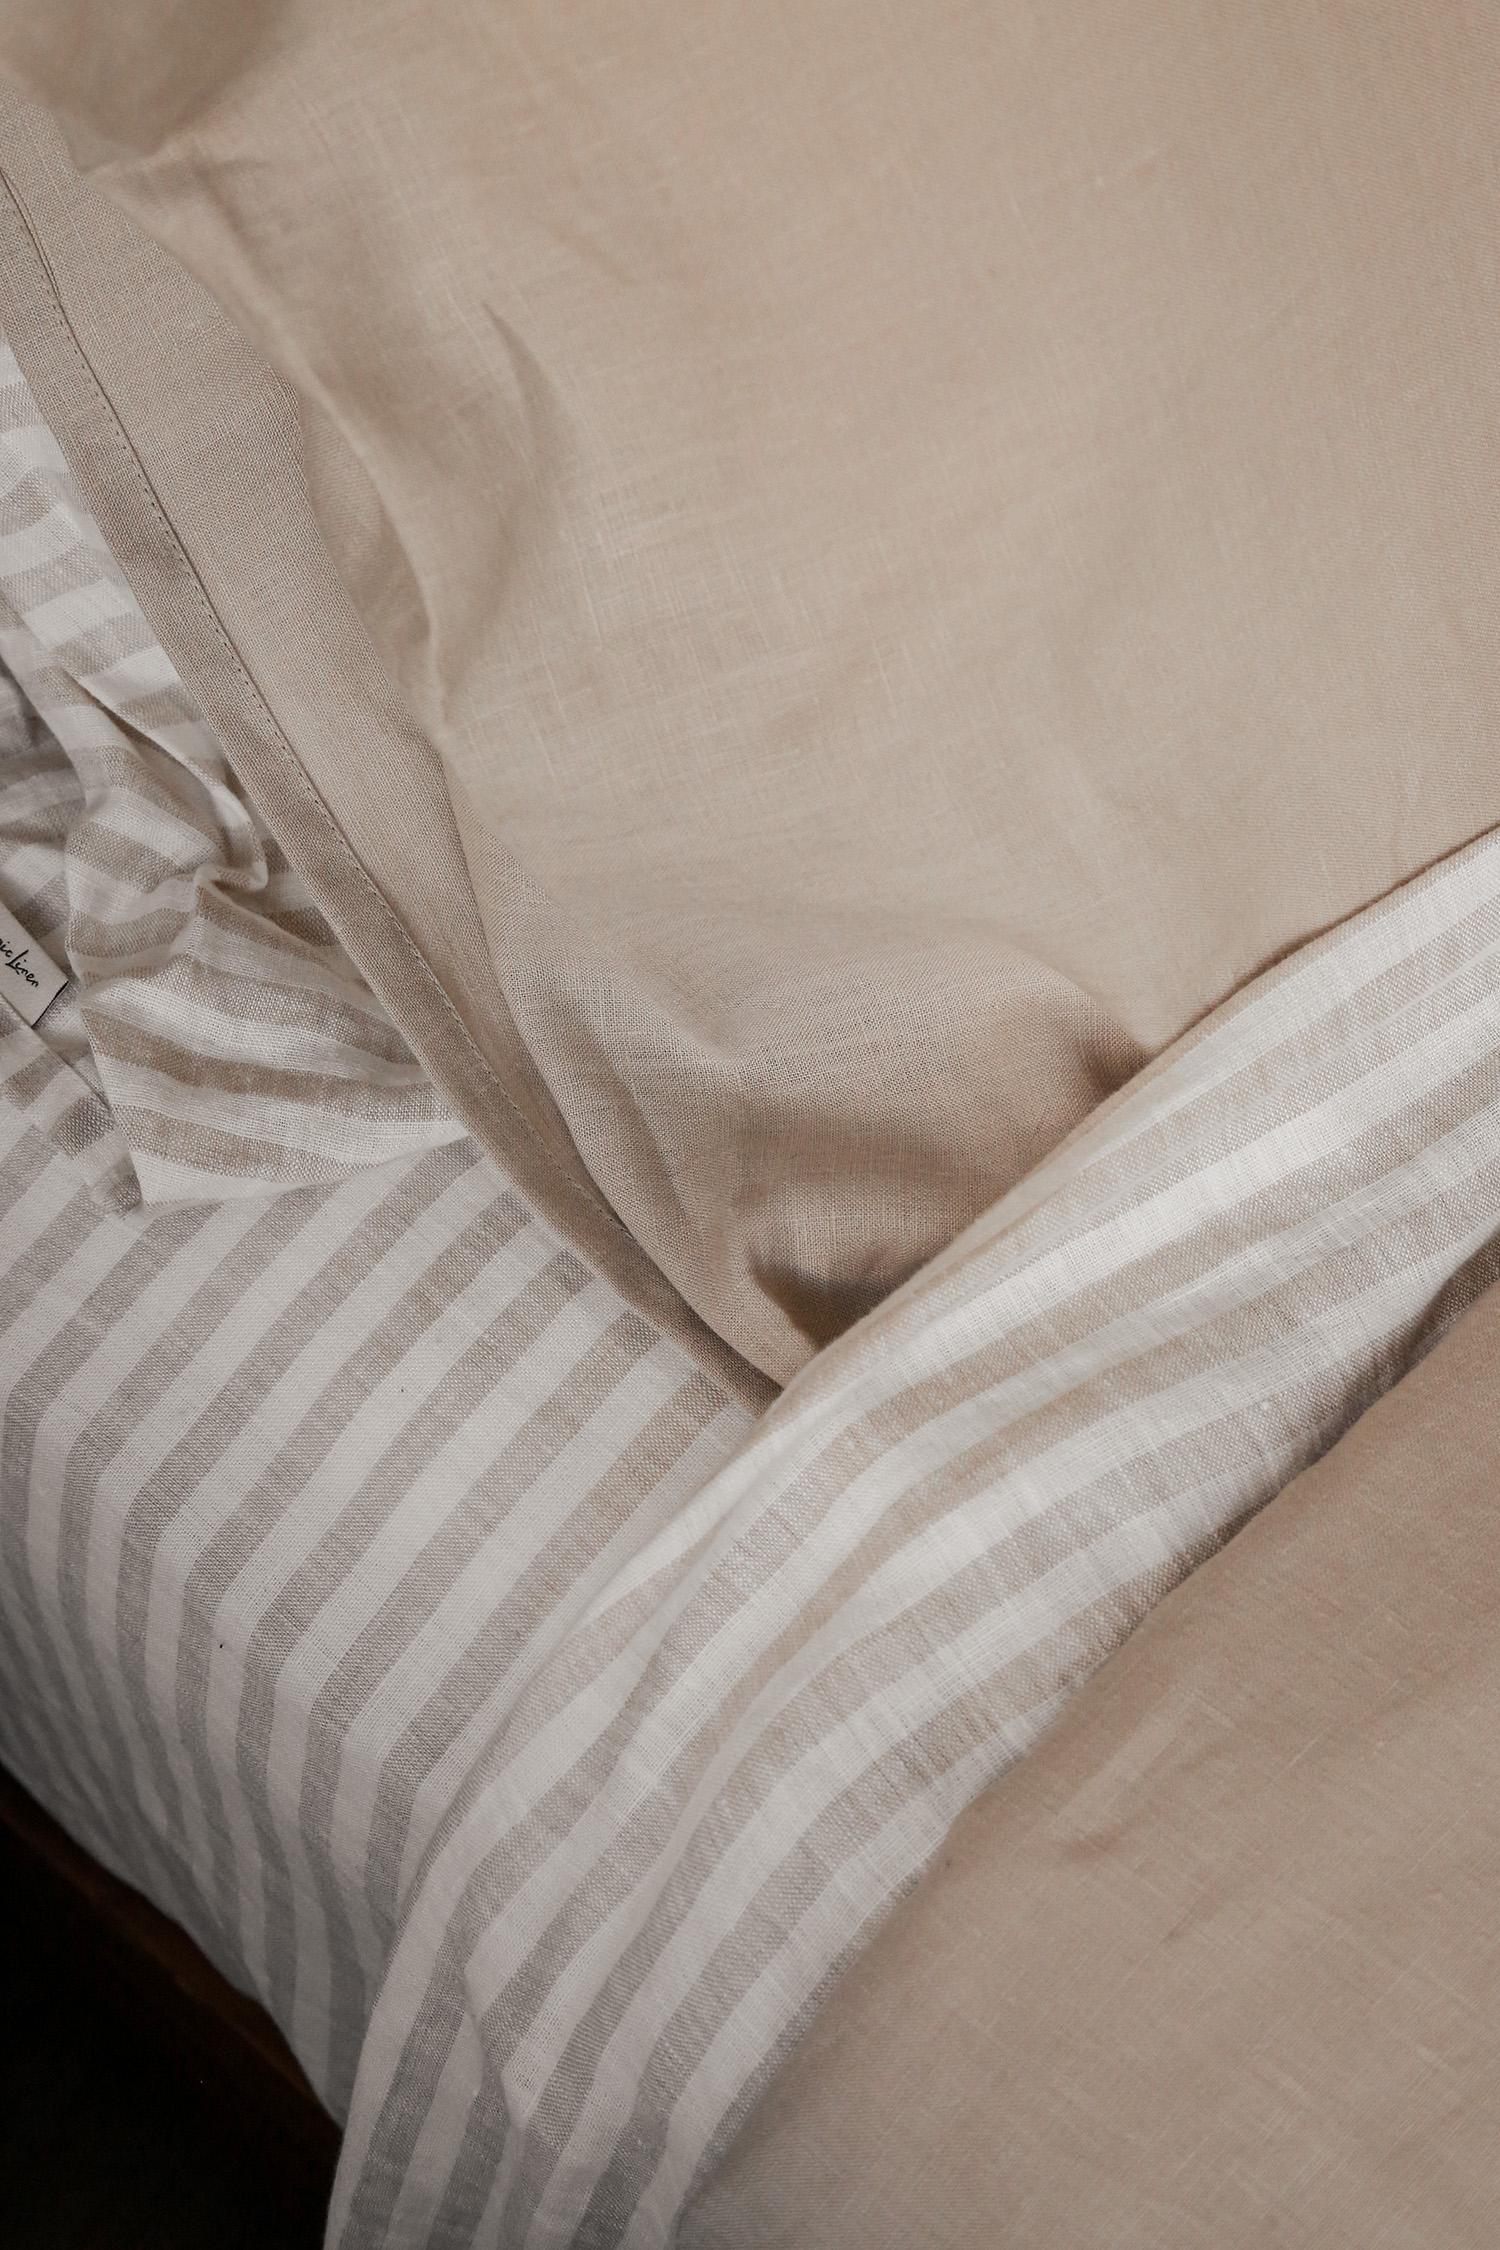 Neutral toned linen bedding